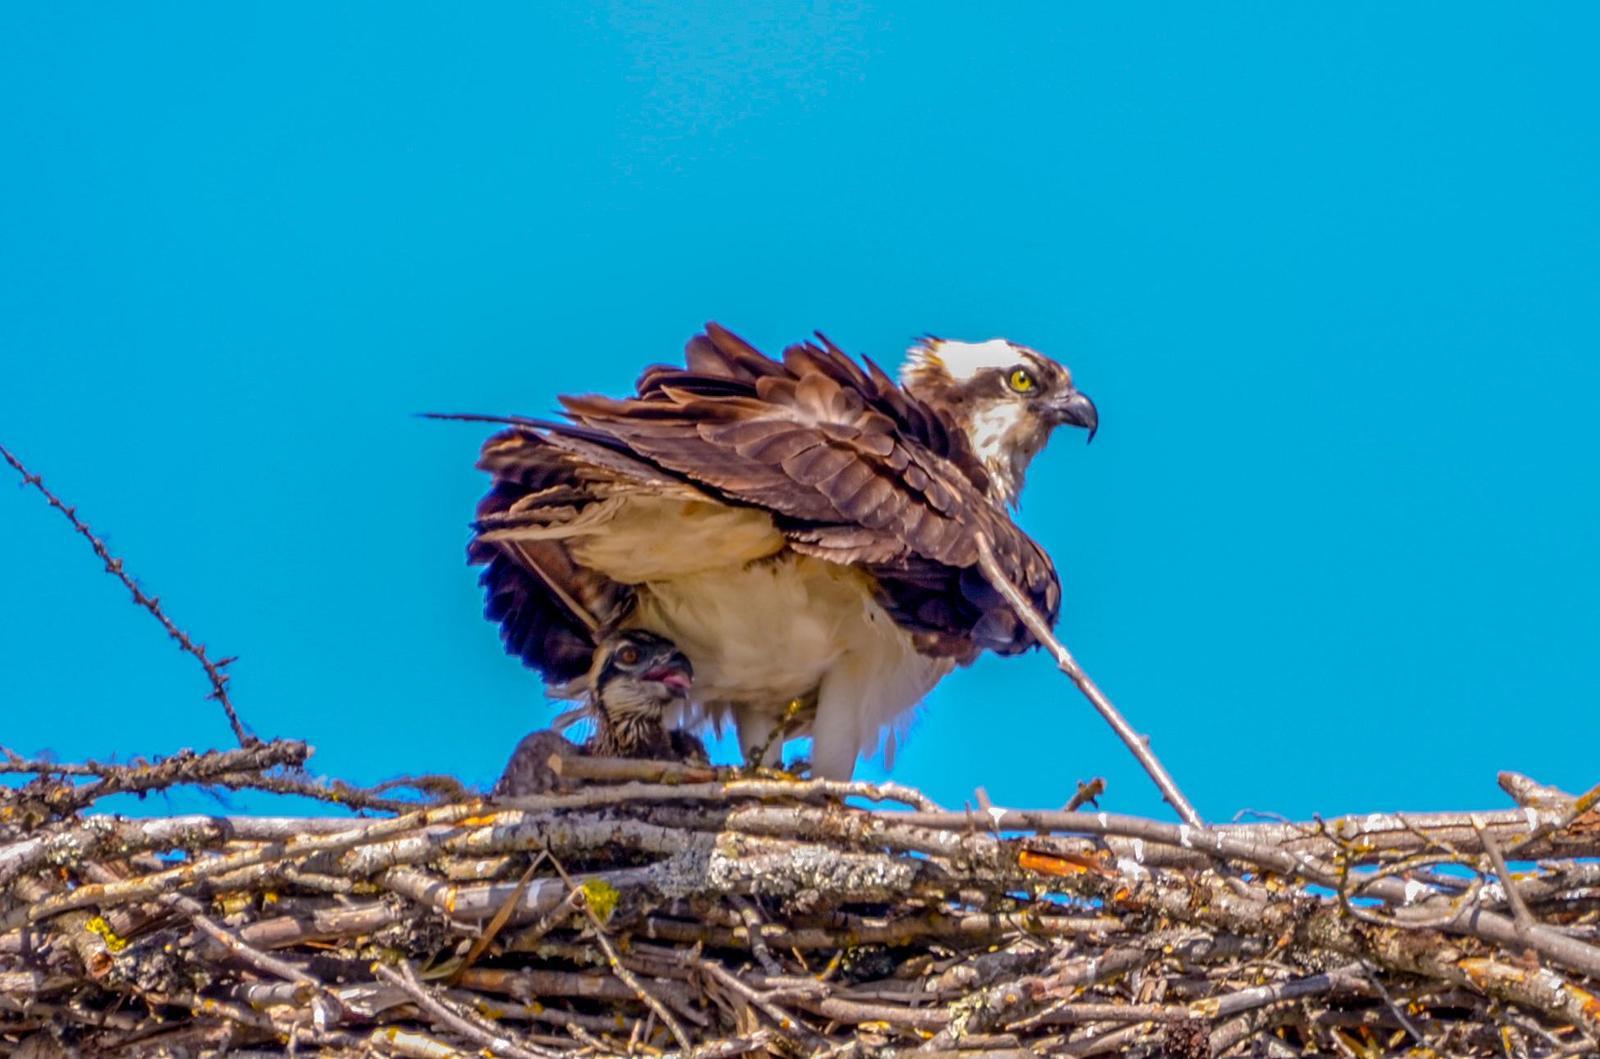 Osprey Photo by Scott Yerges